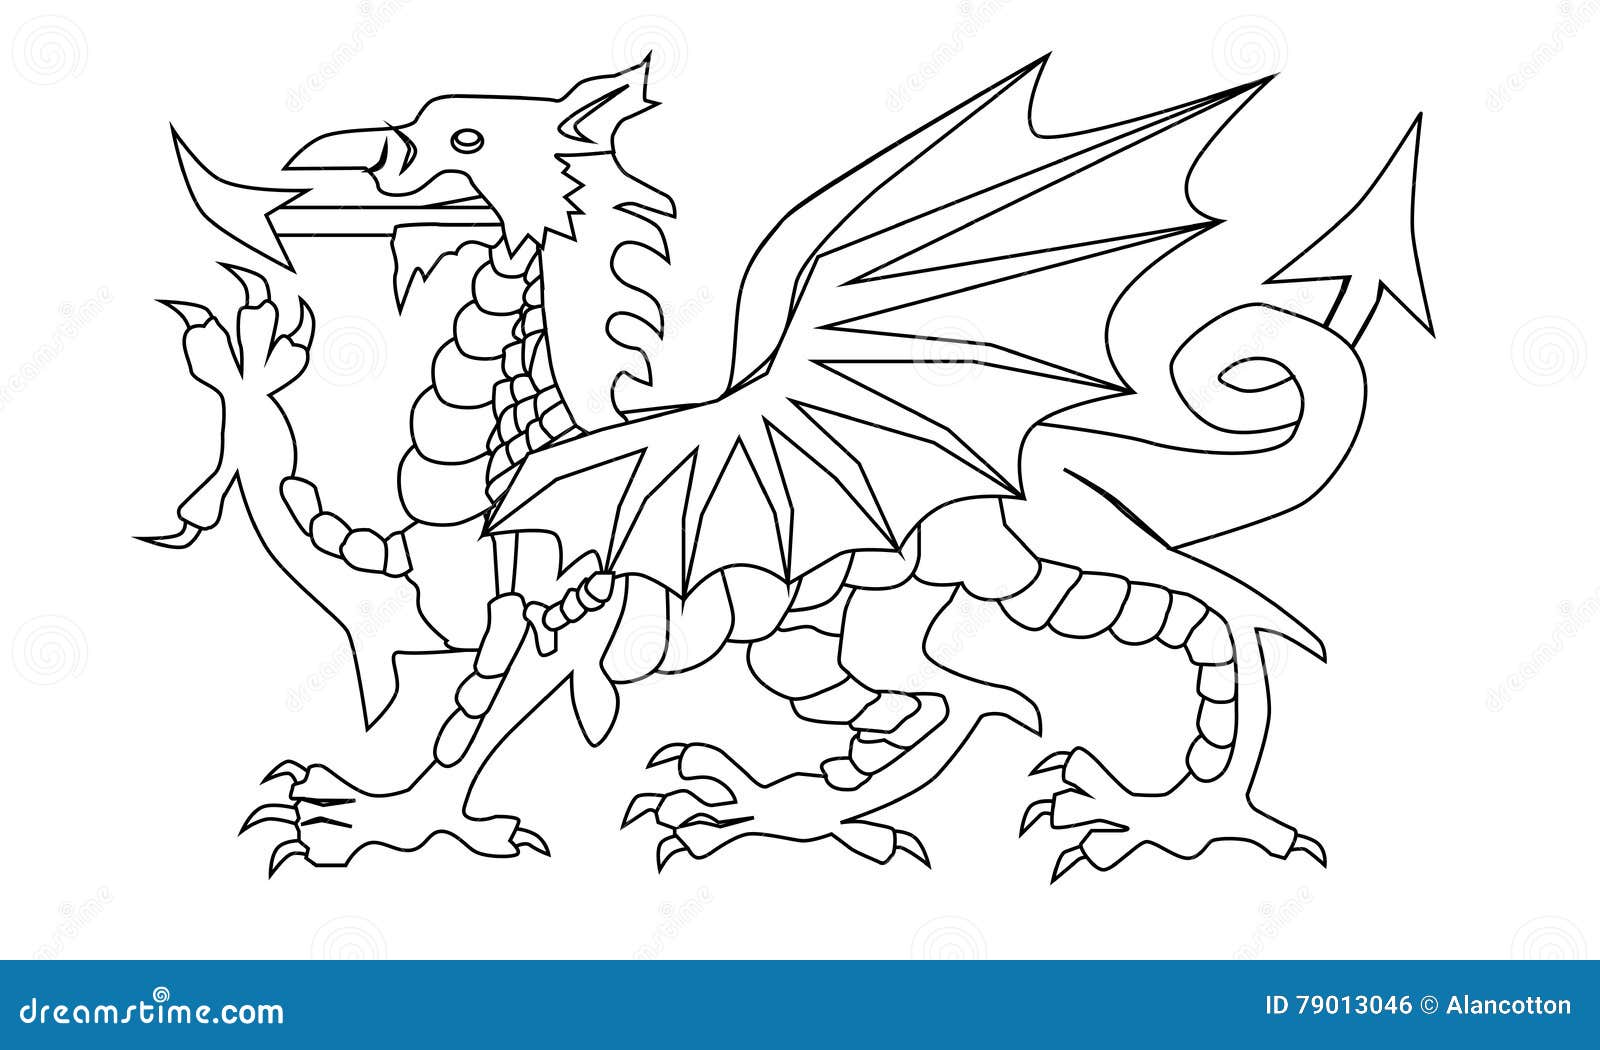 welsh dragon outline